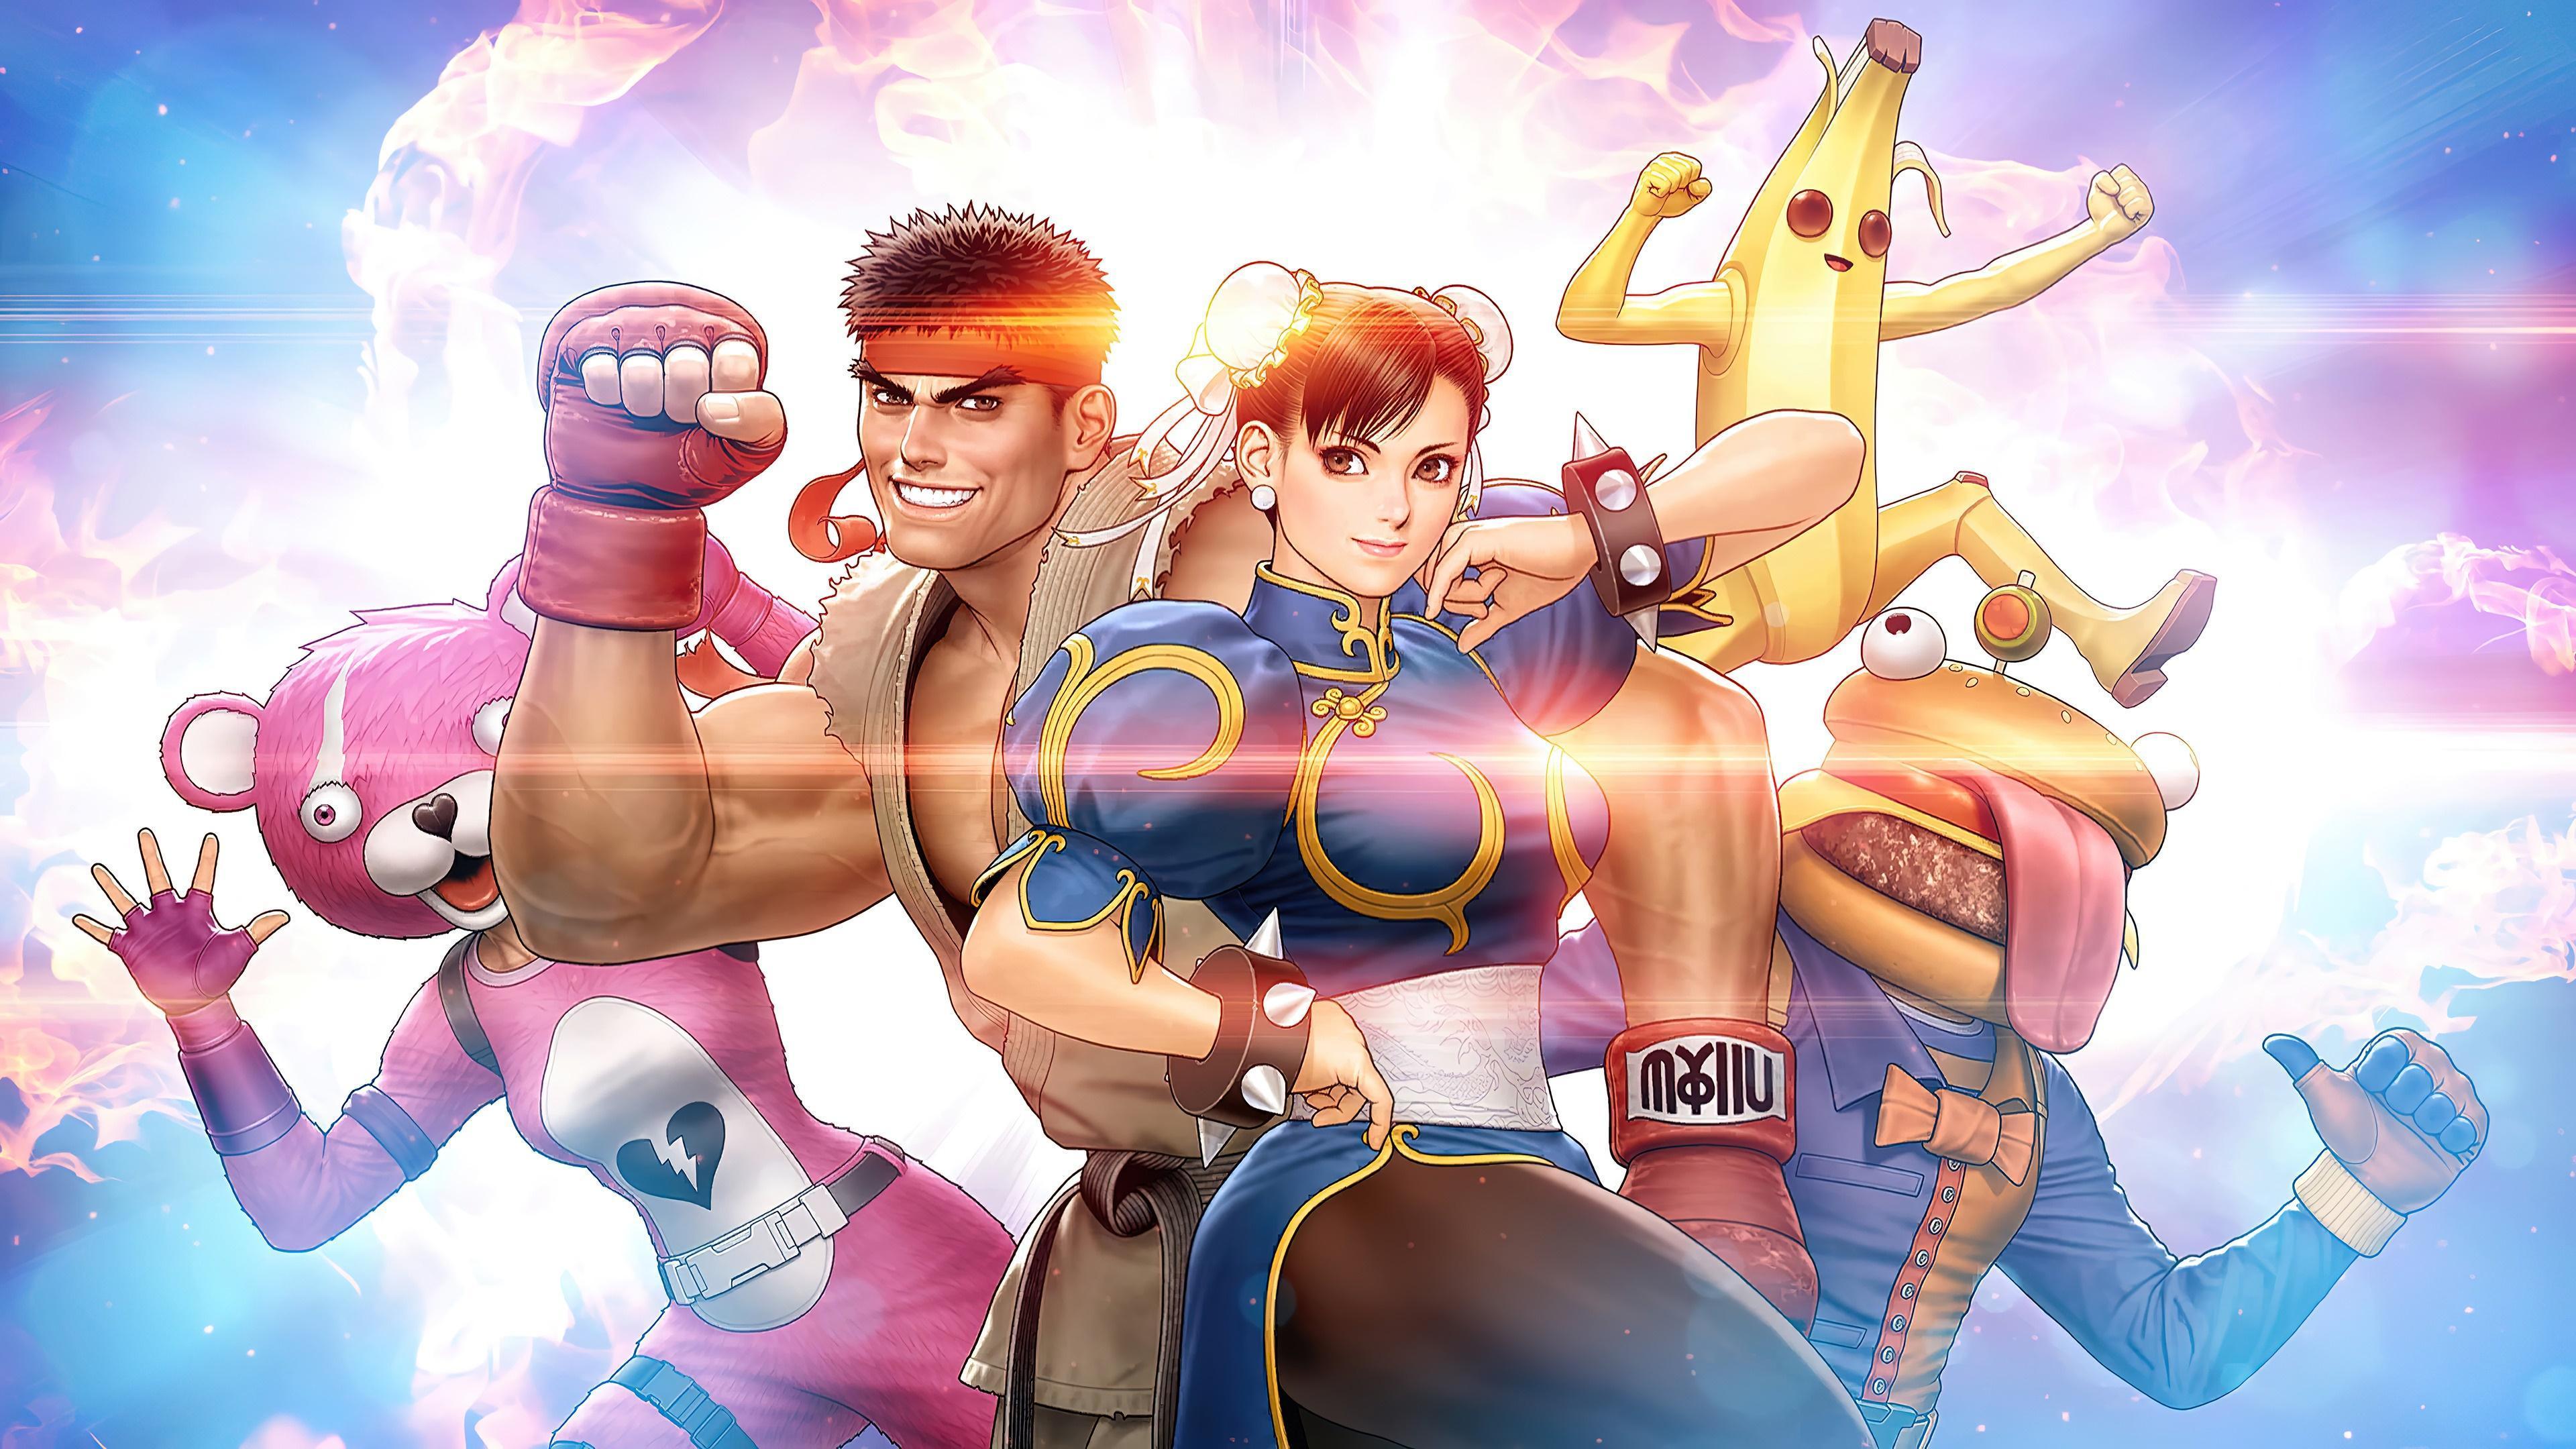 HD wallpaper, Fortnite, Ryu, Street Fighter, Hd, 4K, Chun Li, Wallpaper